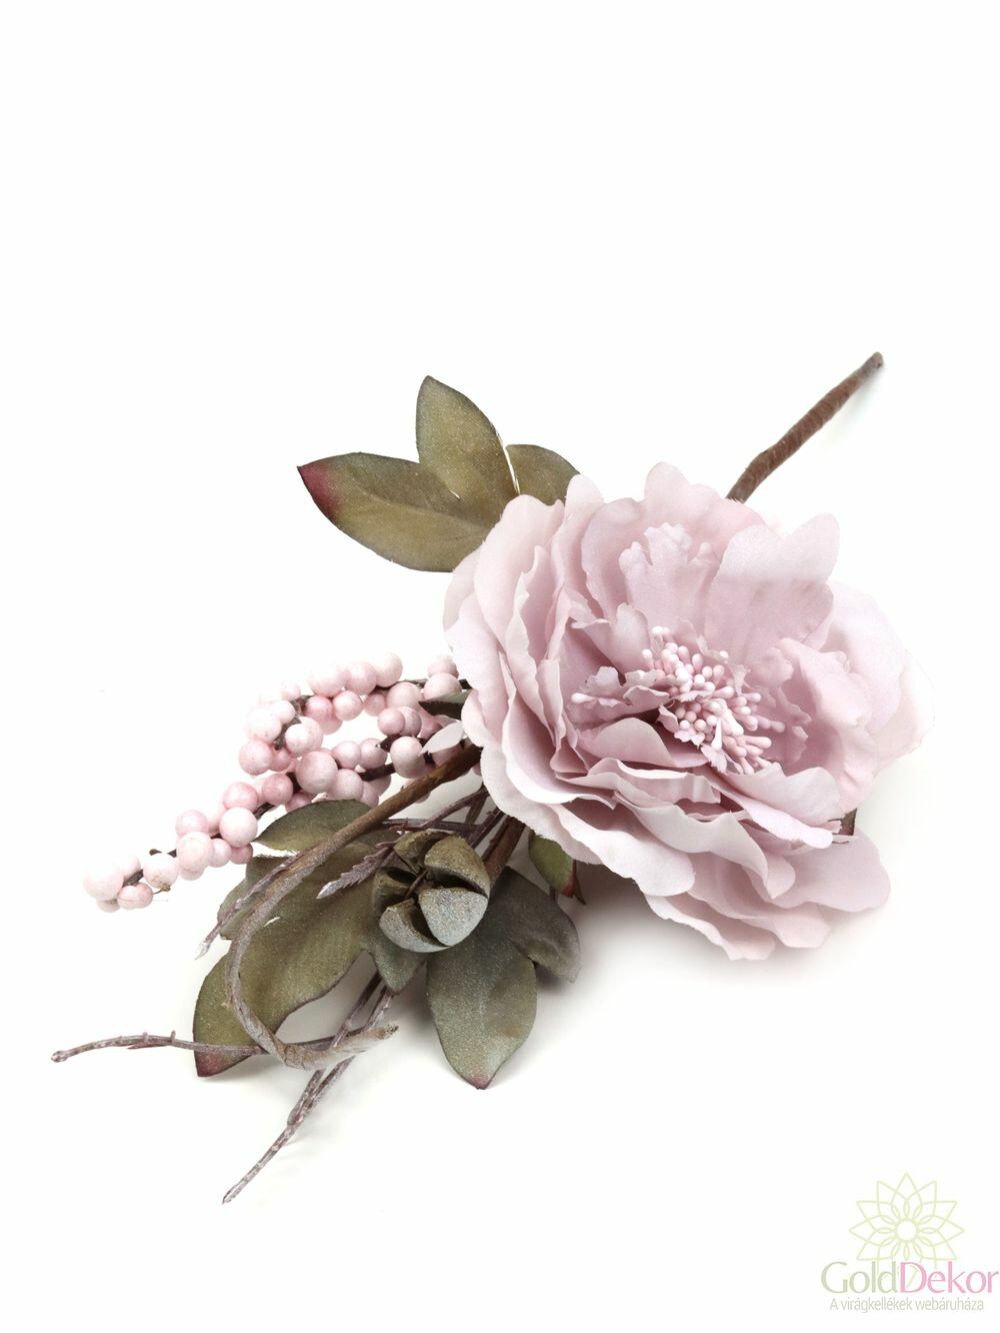 Hamvas pasztel virágos pikk - Halvány lila